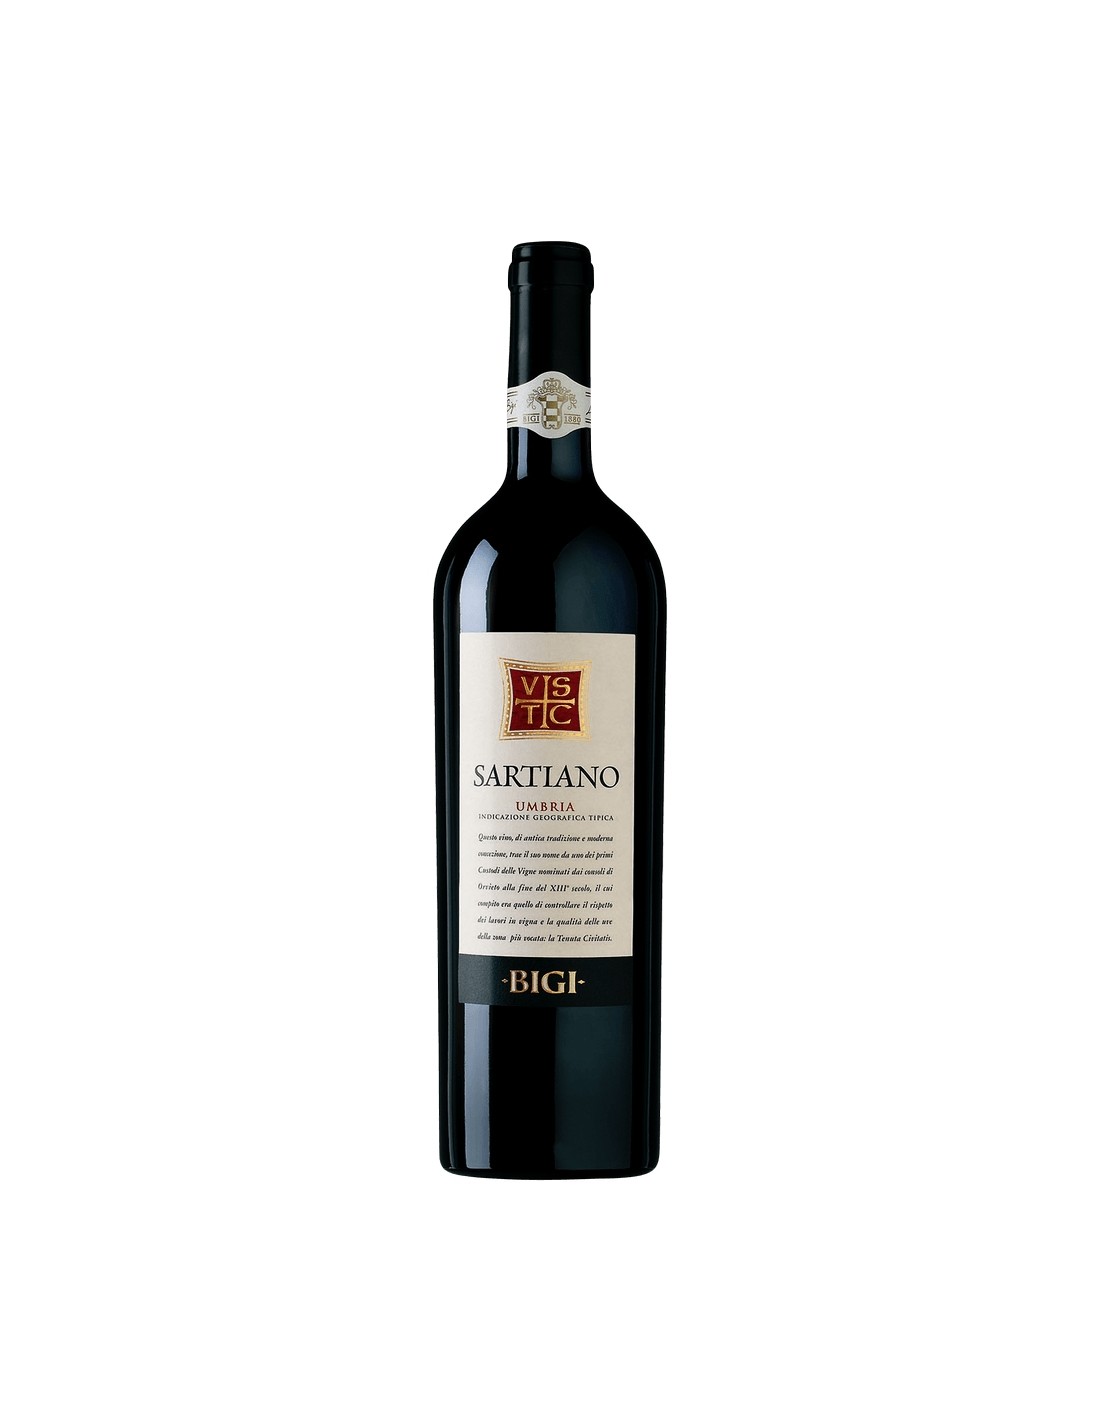 Vin rosu sec, Bigi Sartiano Umbria, 13.5% alc., 0.75L, Italia alcooldiscount.ro